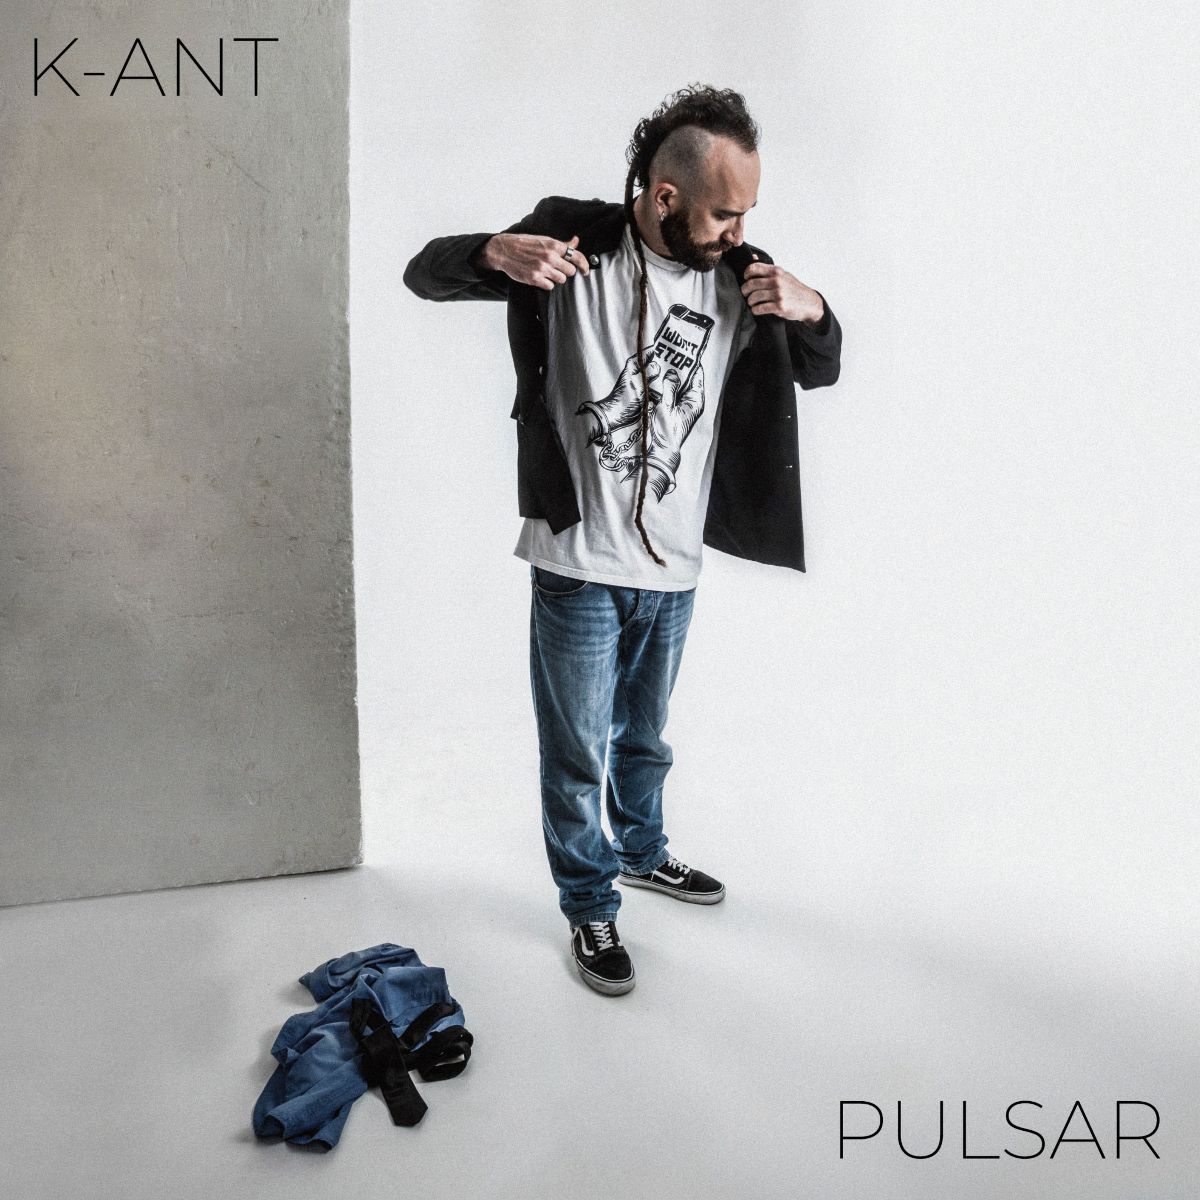 K-ANT pubblica il nuovo singolo “Pulsar”